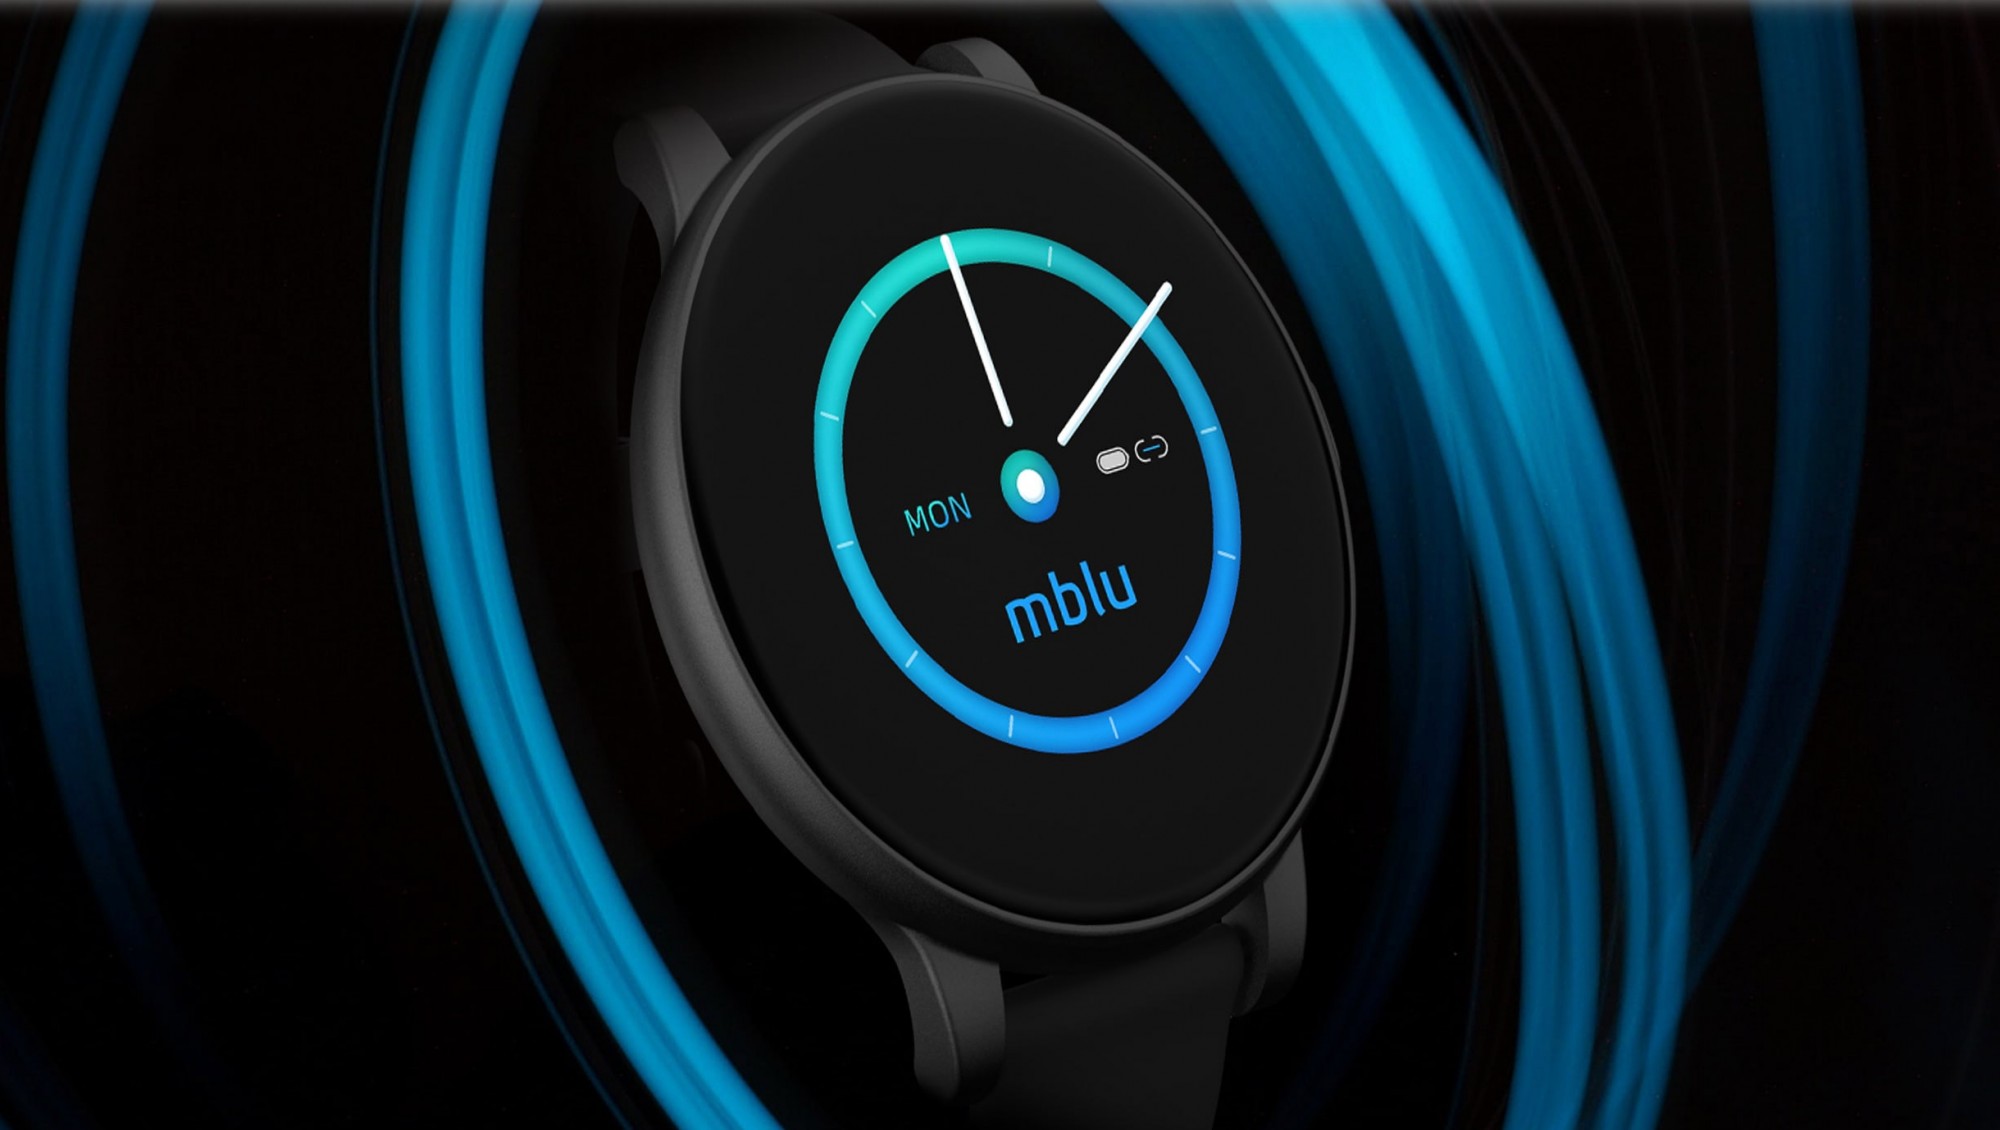 Meizu представила умный браслет под брендом mBlu